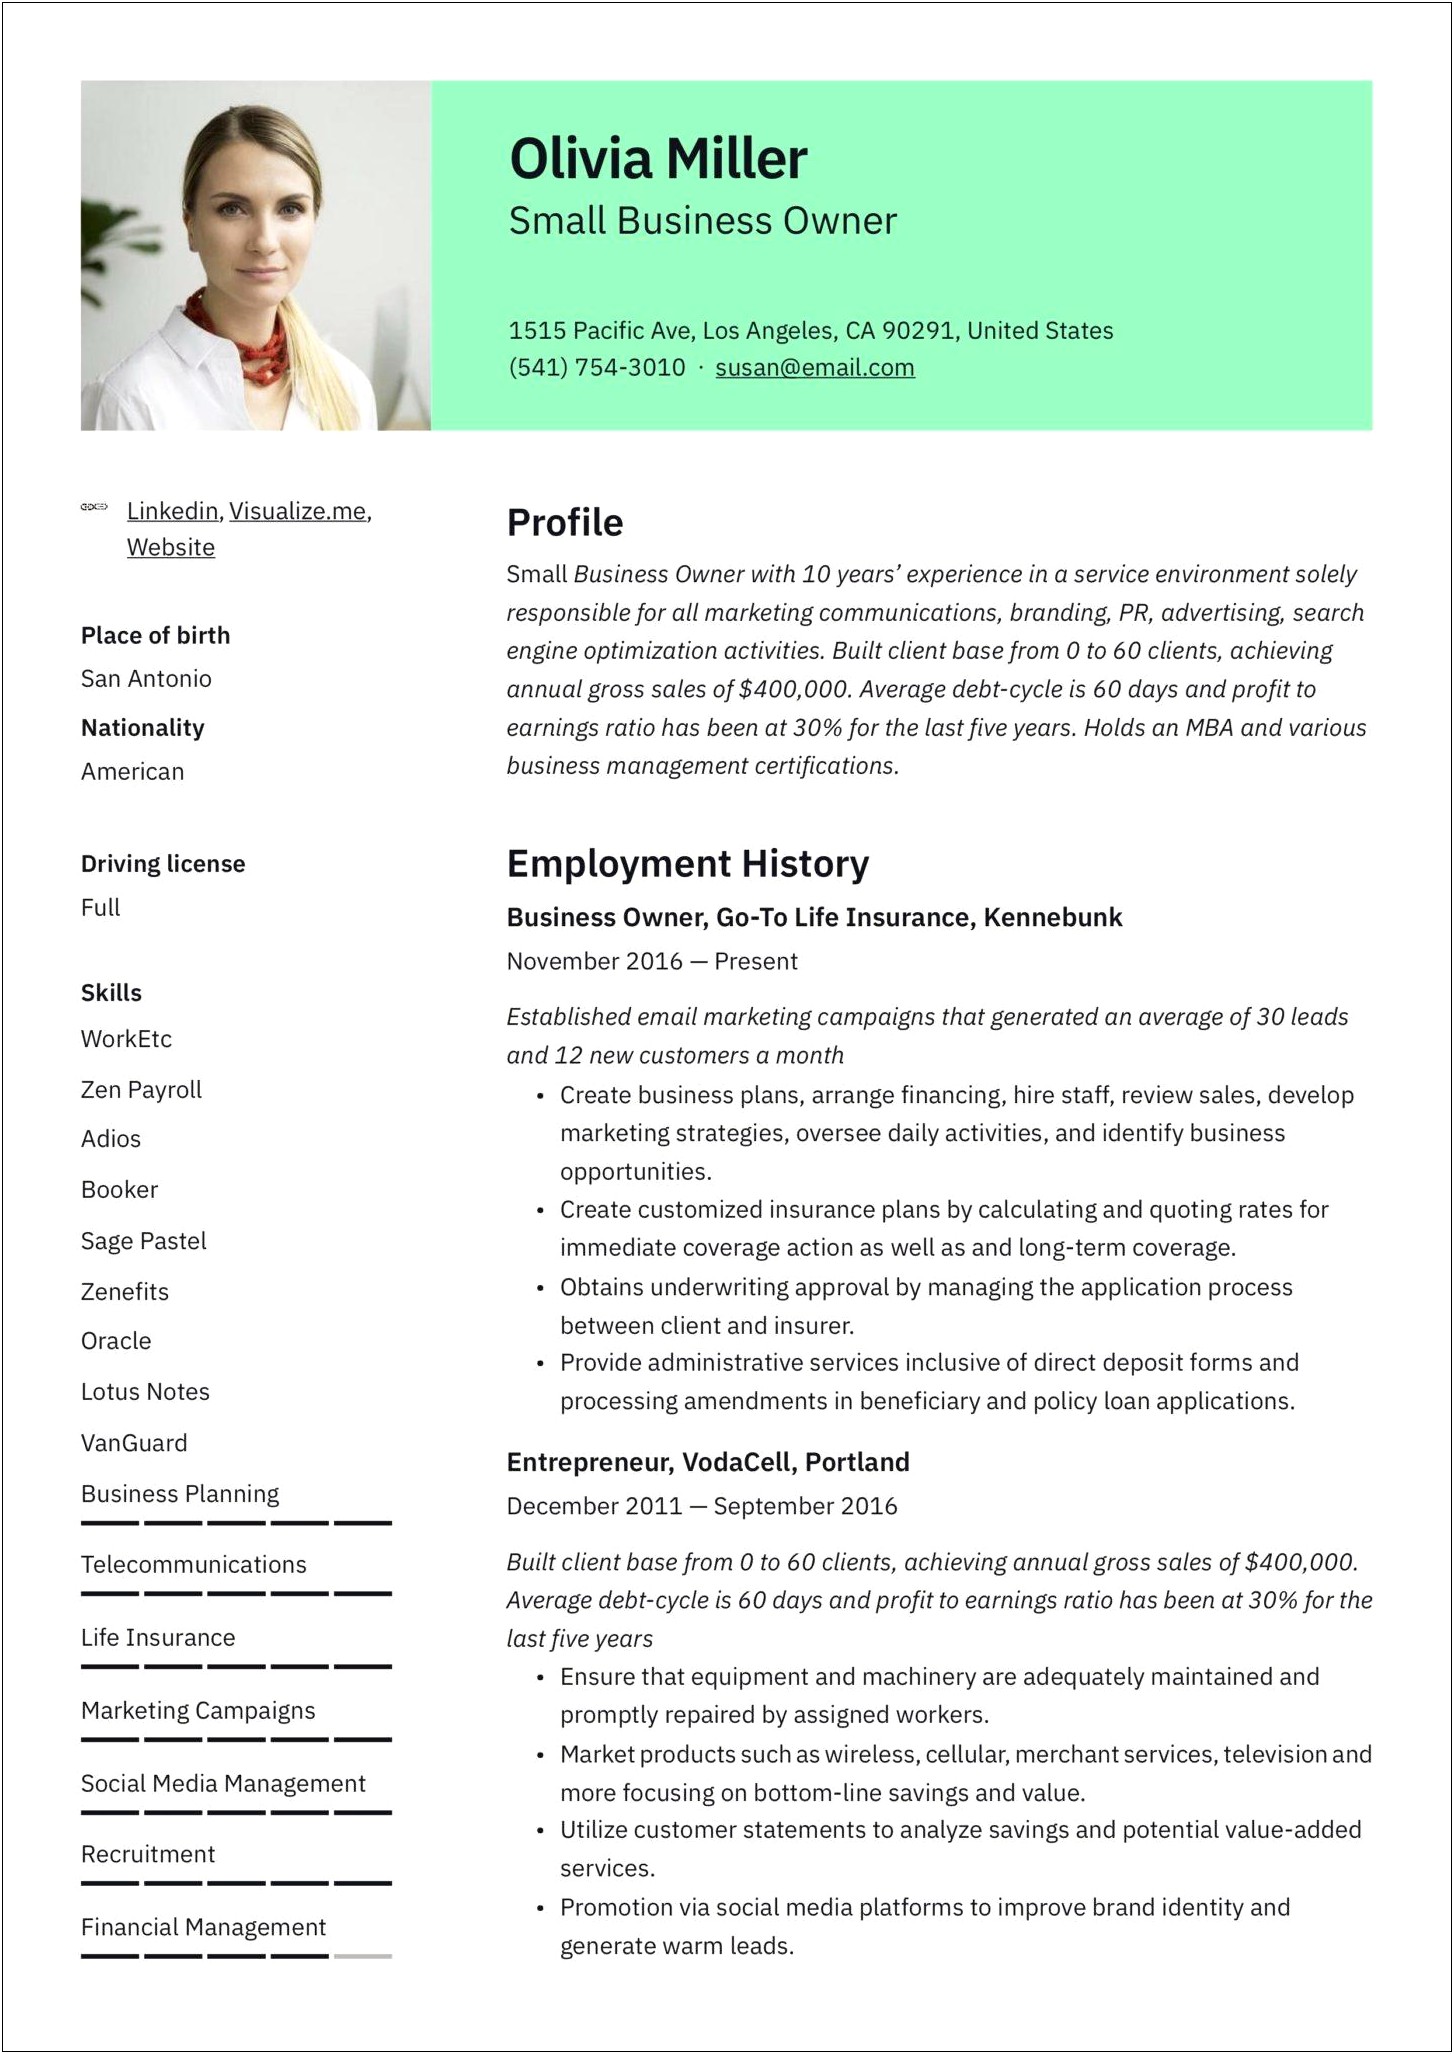 Job Description Business Owner Resume